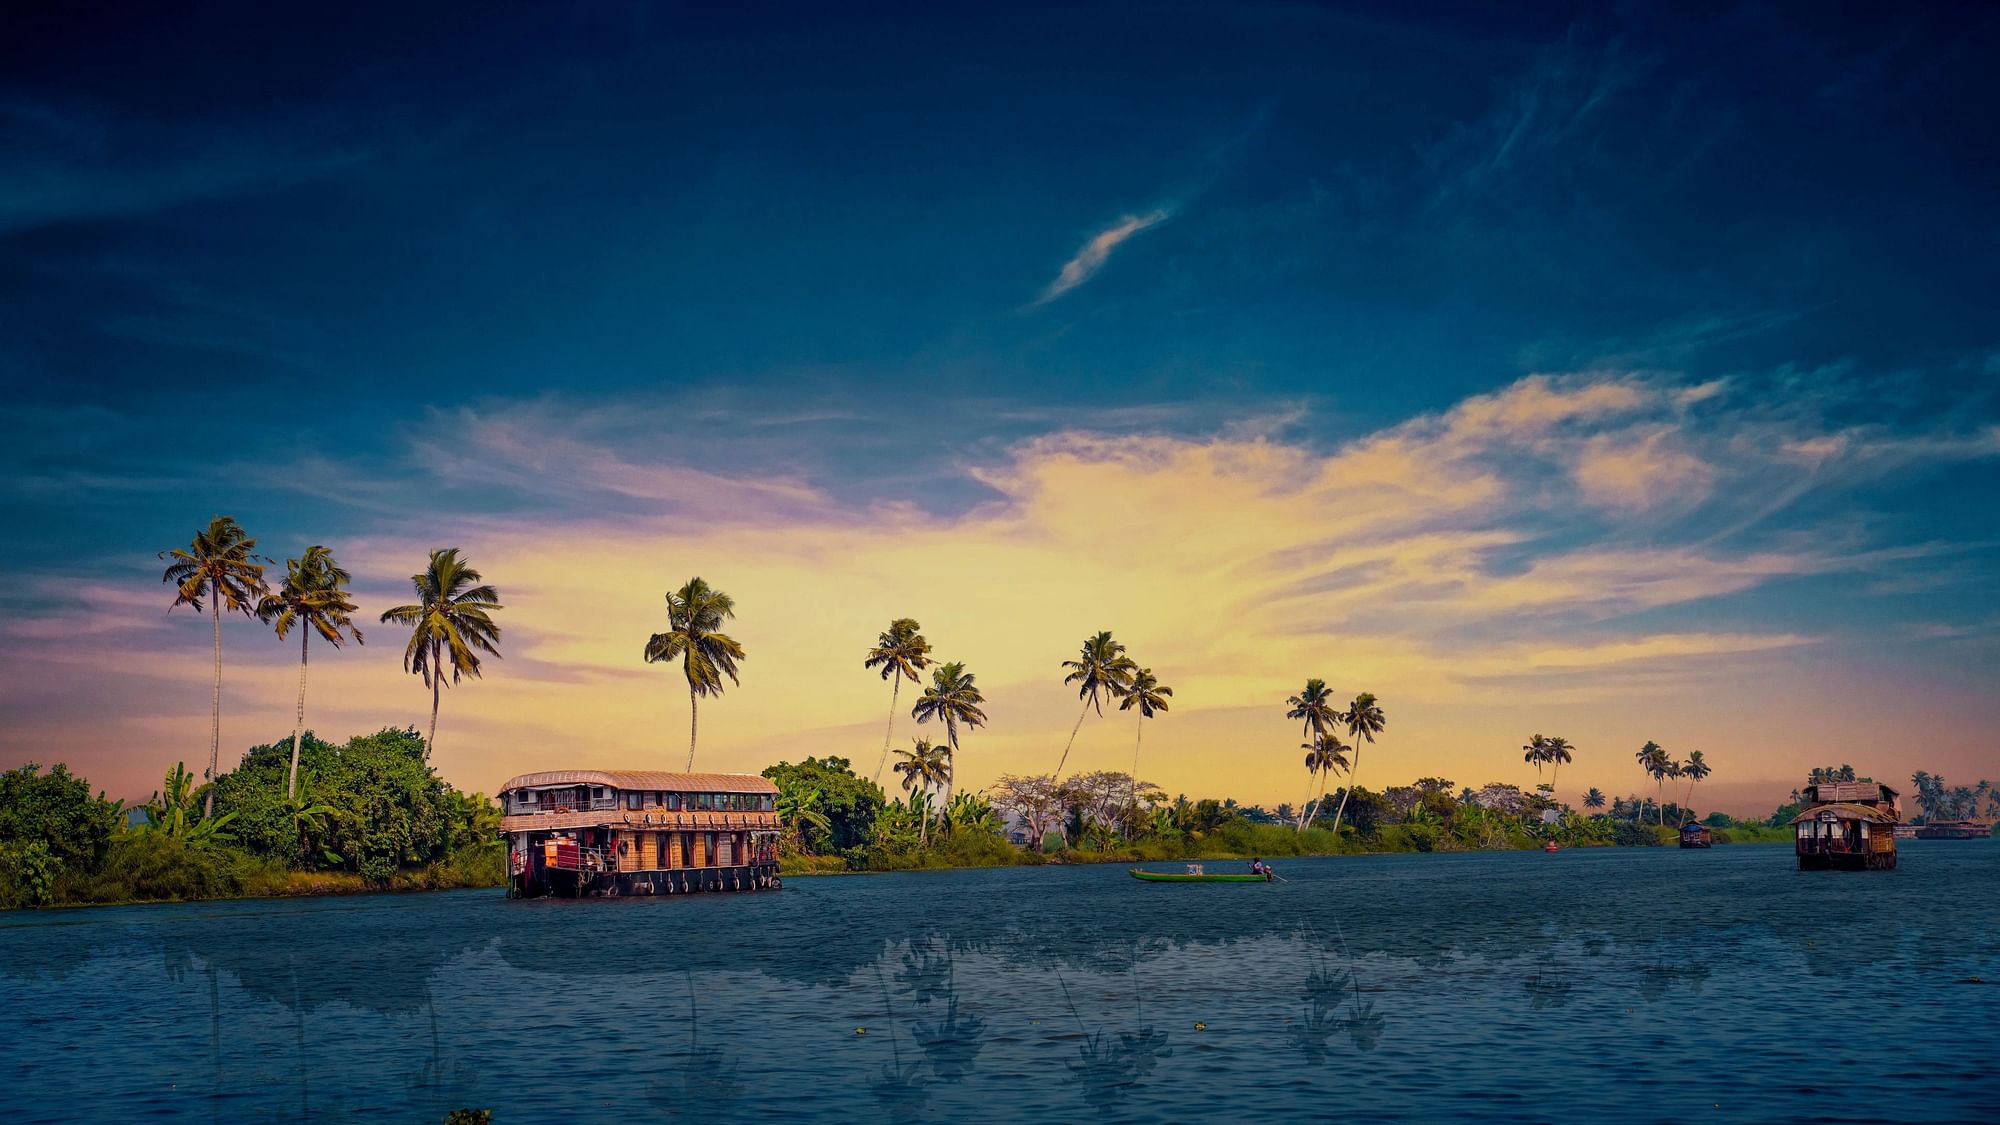 1000 Free Kerala  India Images  Pixabay